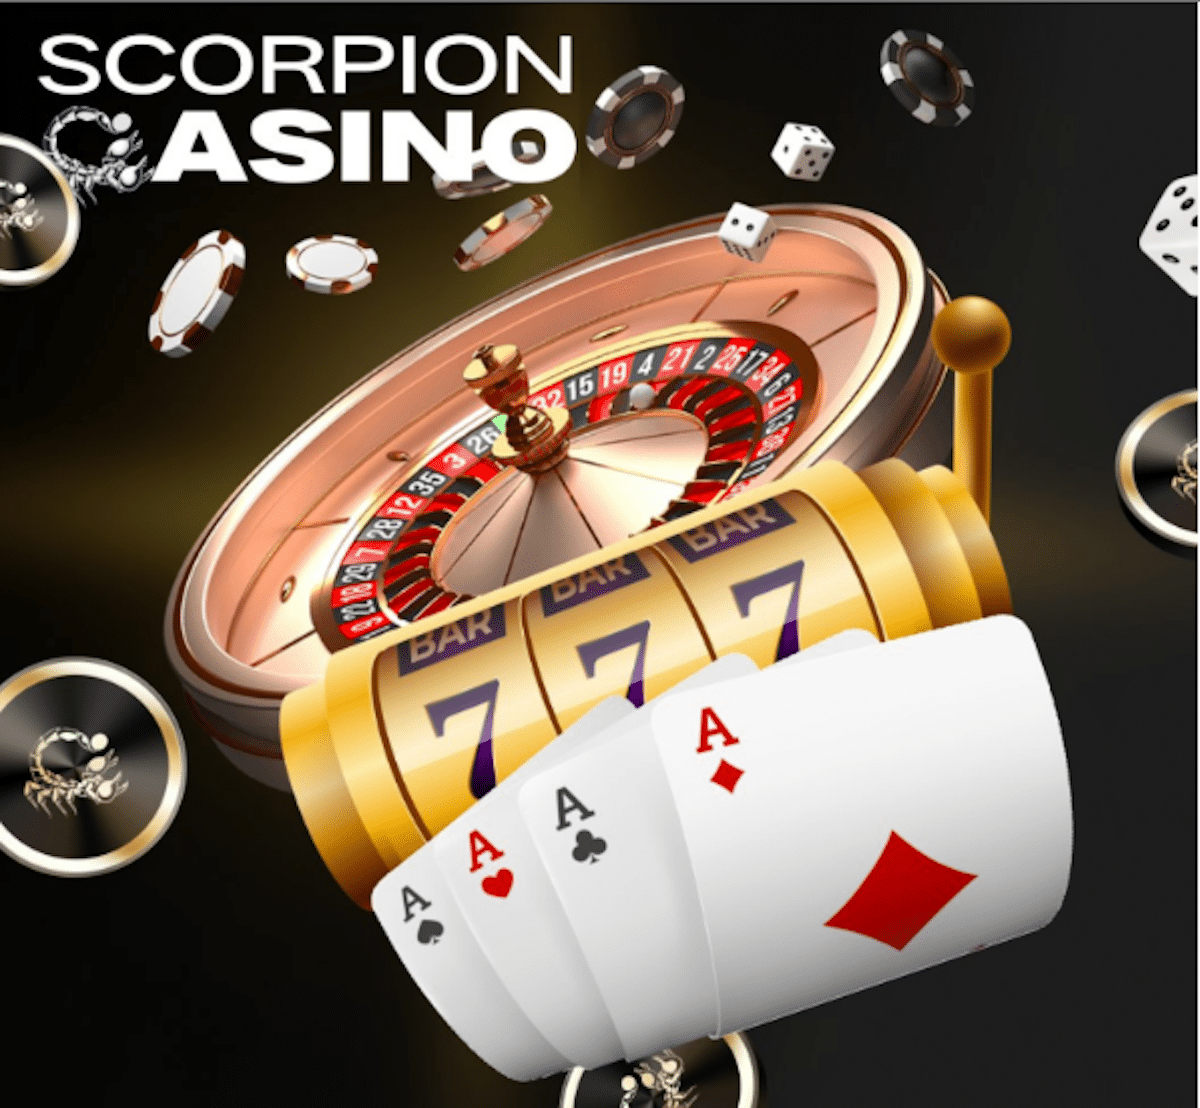 Ascensão do Scorpion Casino a US$ 3,5 milhões – O que despertou o interesse dos investidores?